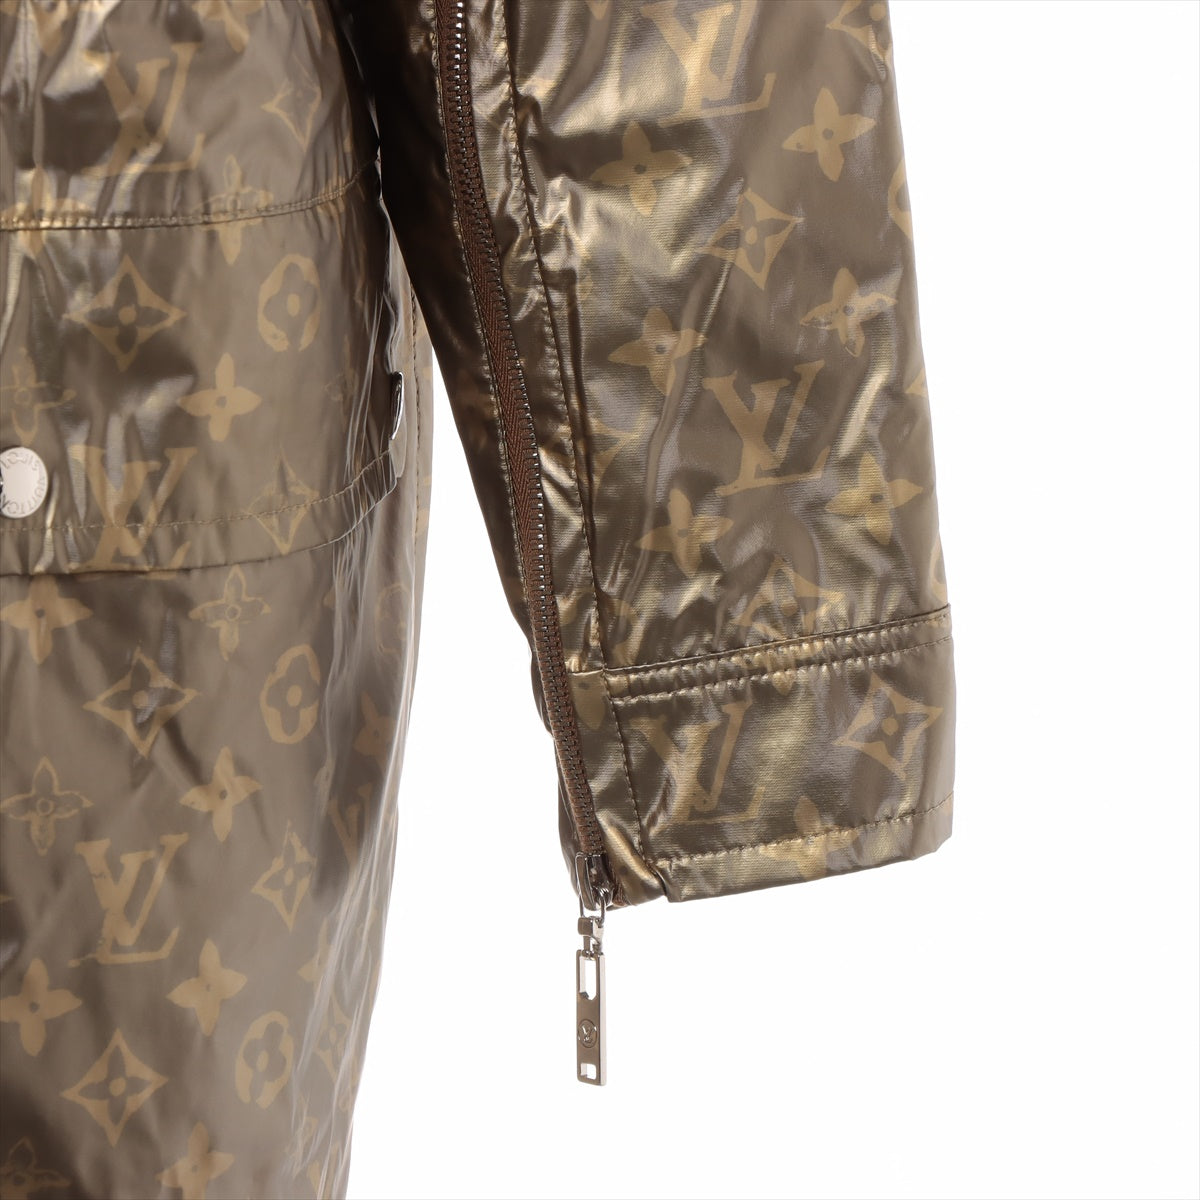 Louis Vuitton 21SS Modal Jacket 36 Ladies' Gold  Monogram RW211W PU coating processing 2WAY